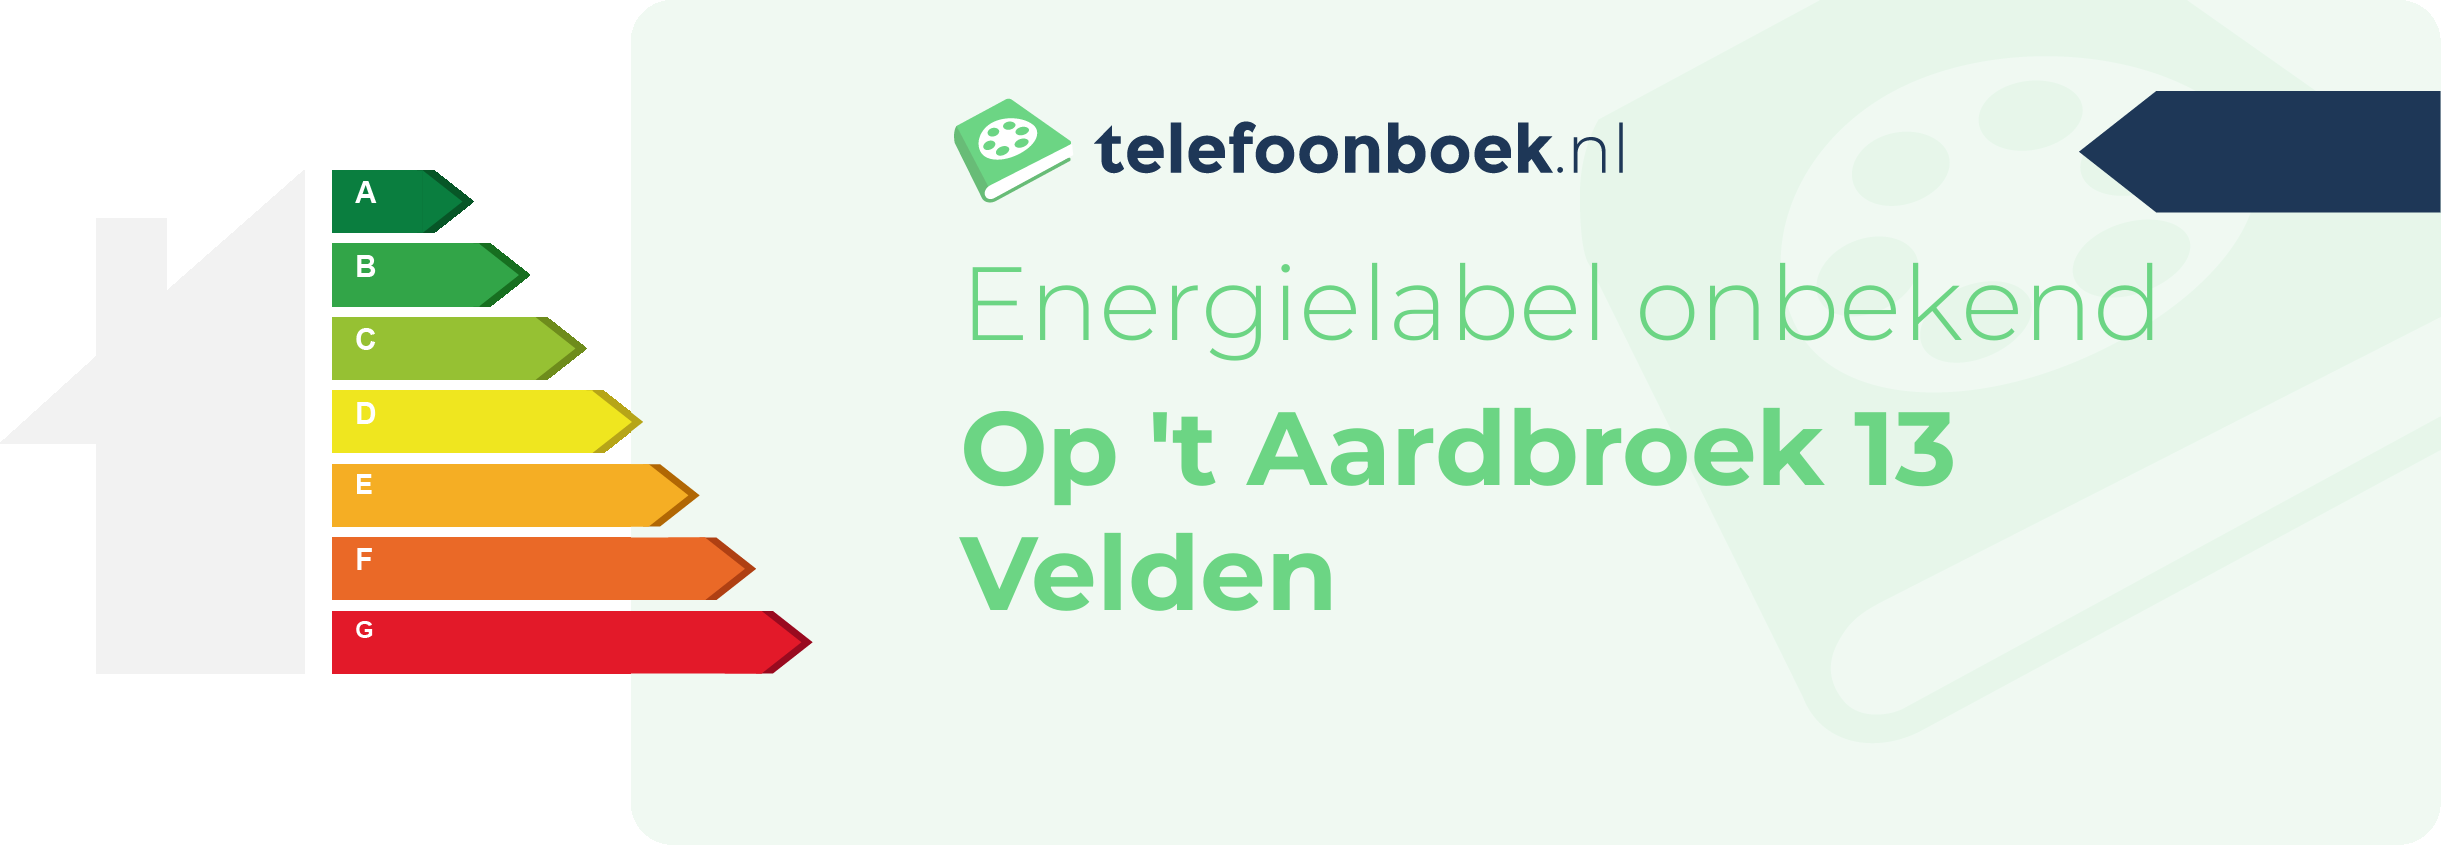 Energielabel Op 't Aardbroek 13 Velden